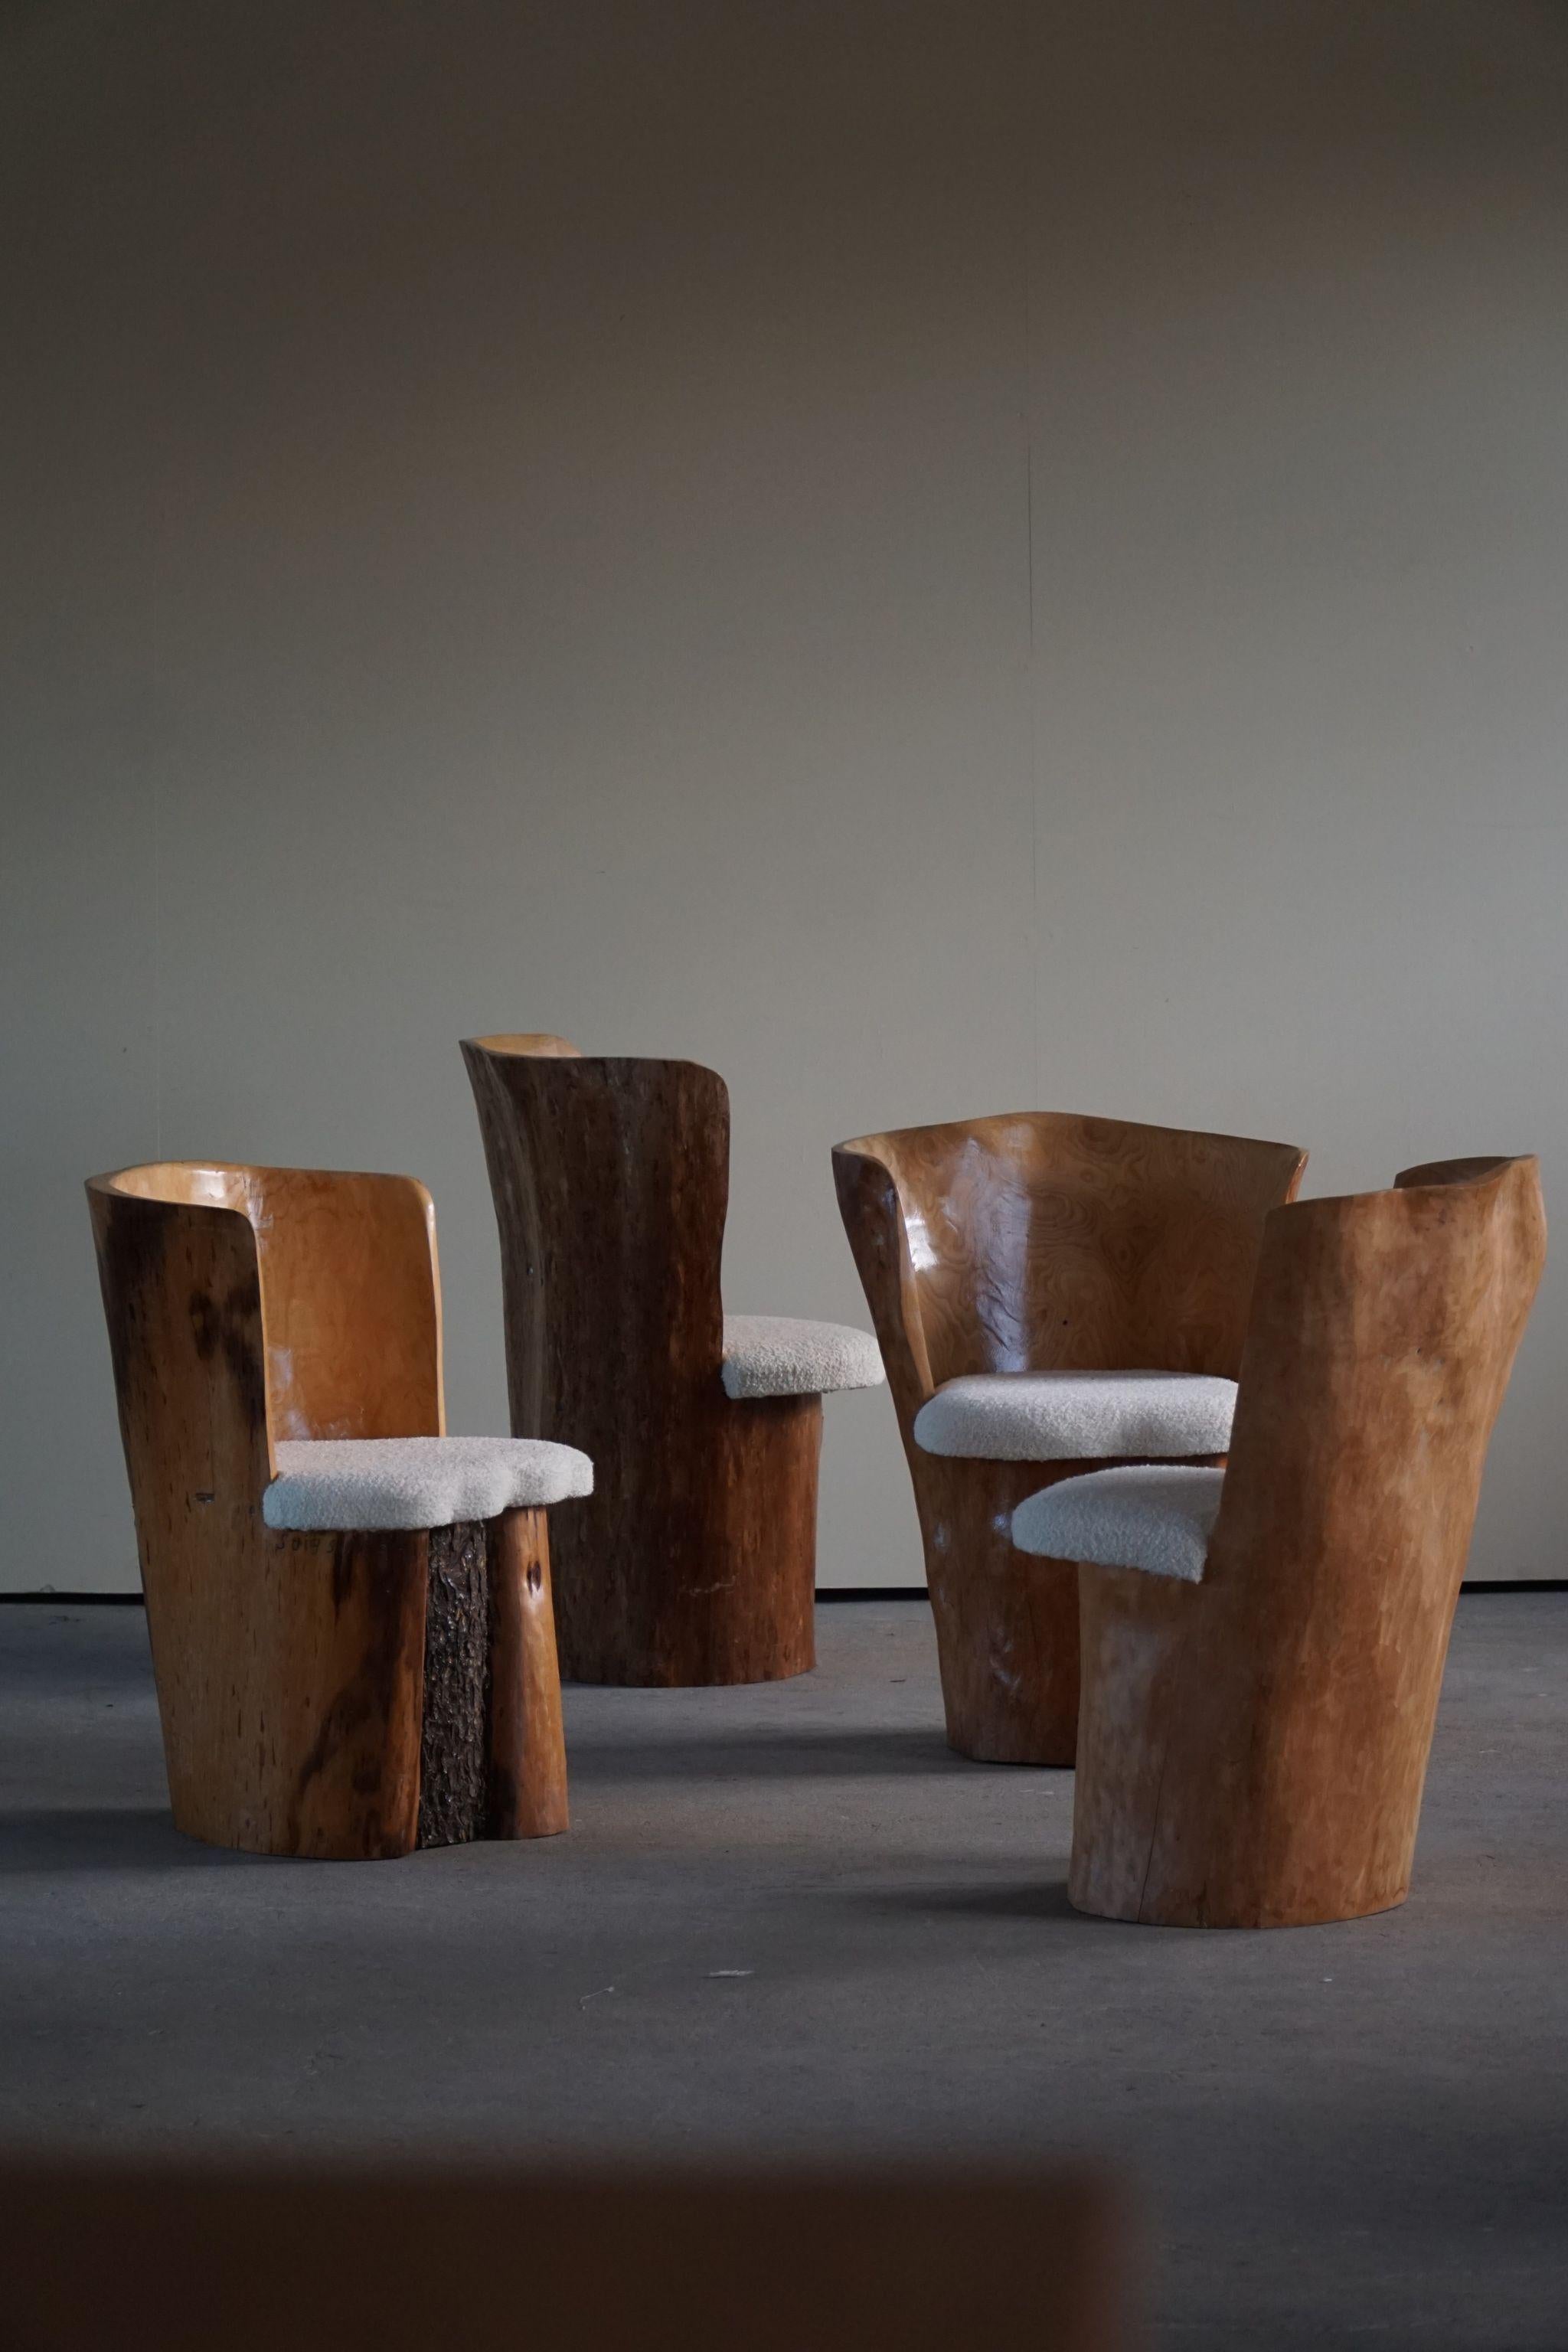 Un ensemble unique de 4 chaises en pin massif, recouvertes de laine bouclée. Sculptée à la main en Suède par un ébéniste local, Stig Sundahl. Daté de 1983 à 1987.

Un tel ensemble décoratif pour l'intérieur moderne et une grande opportunité de